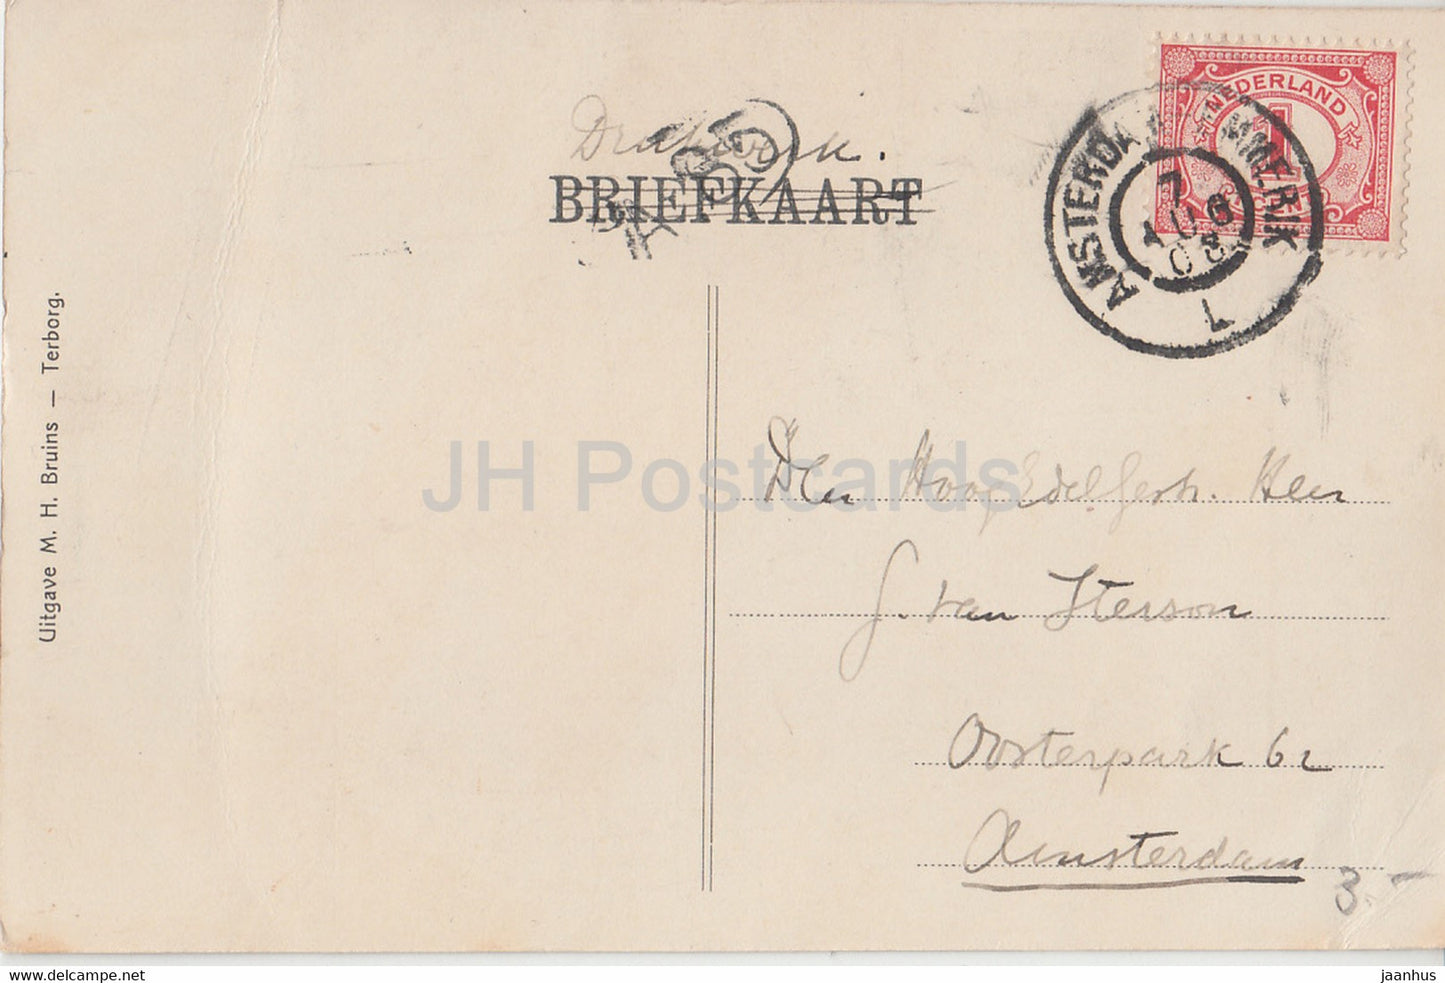 Mollekolk - Groet uit Terborg - M H Bruins - old postcard - 1908 - Netherlands - used